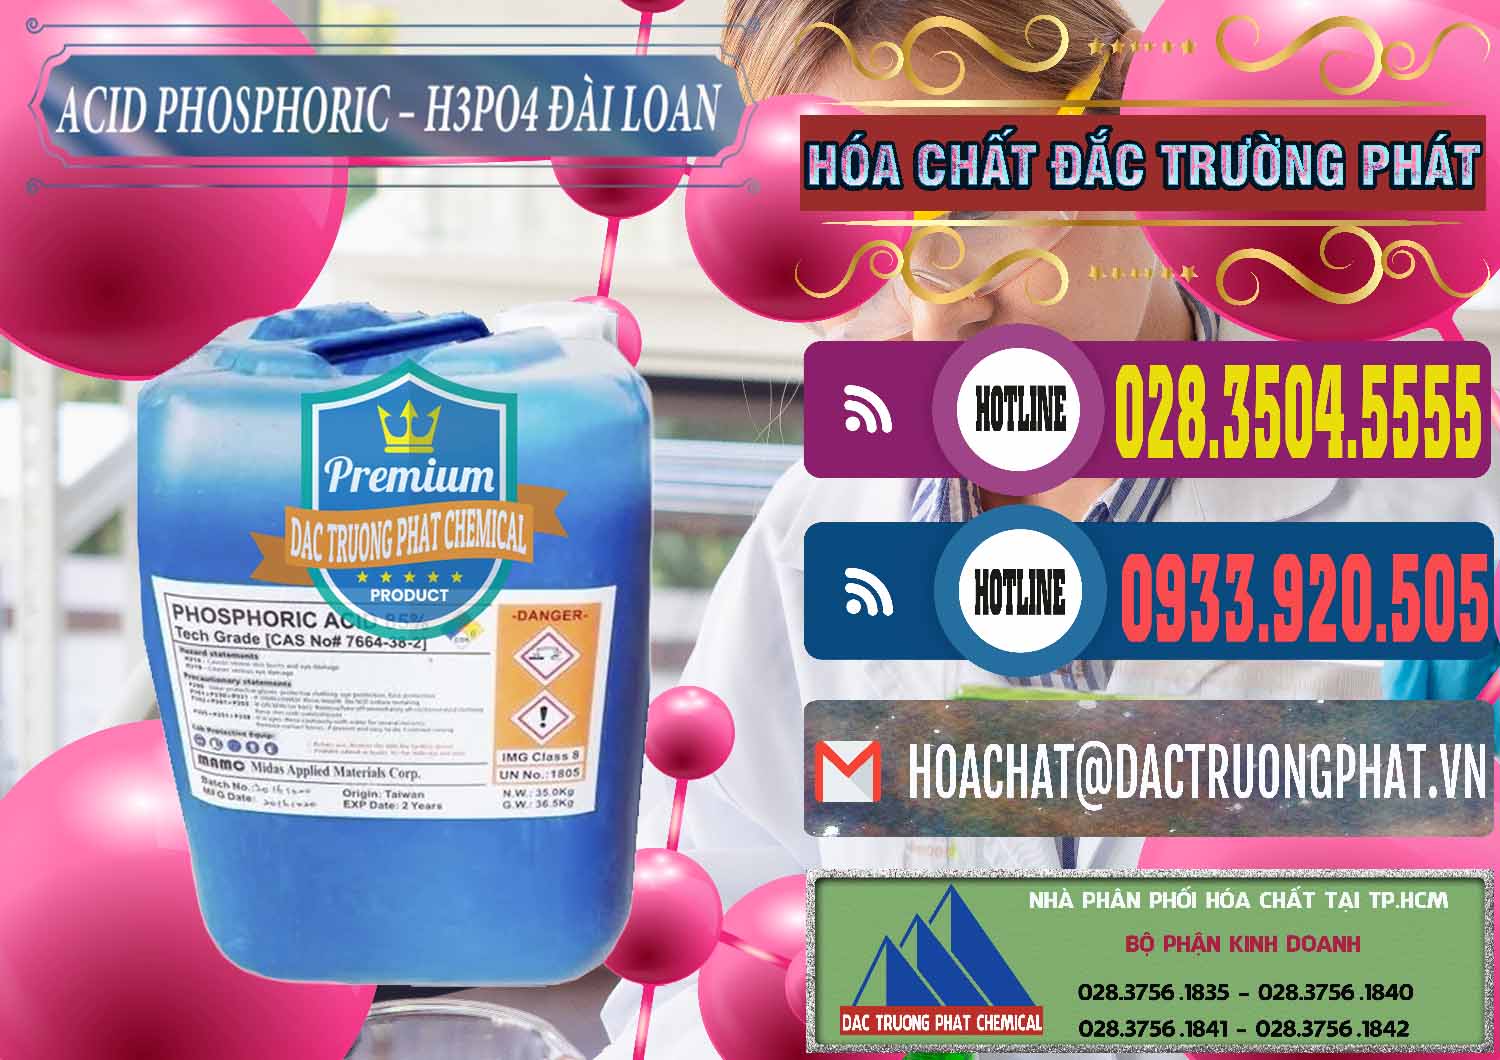 Nơi chuyên bán & phân phối Axit Phosphoric - Acid Phosphoric H3PO4 85% Đài Loan Taiwan - 0351 - Công ty chuyên bán & cung cấp hóa chất tại TP.HCM - muabanhoachat.com.vn